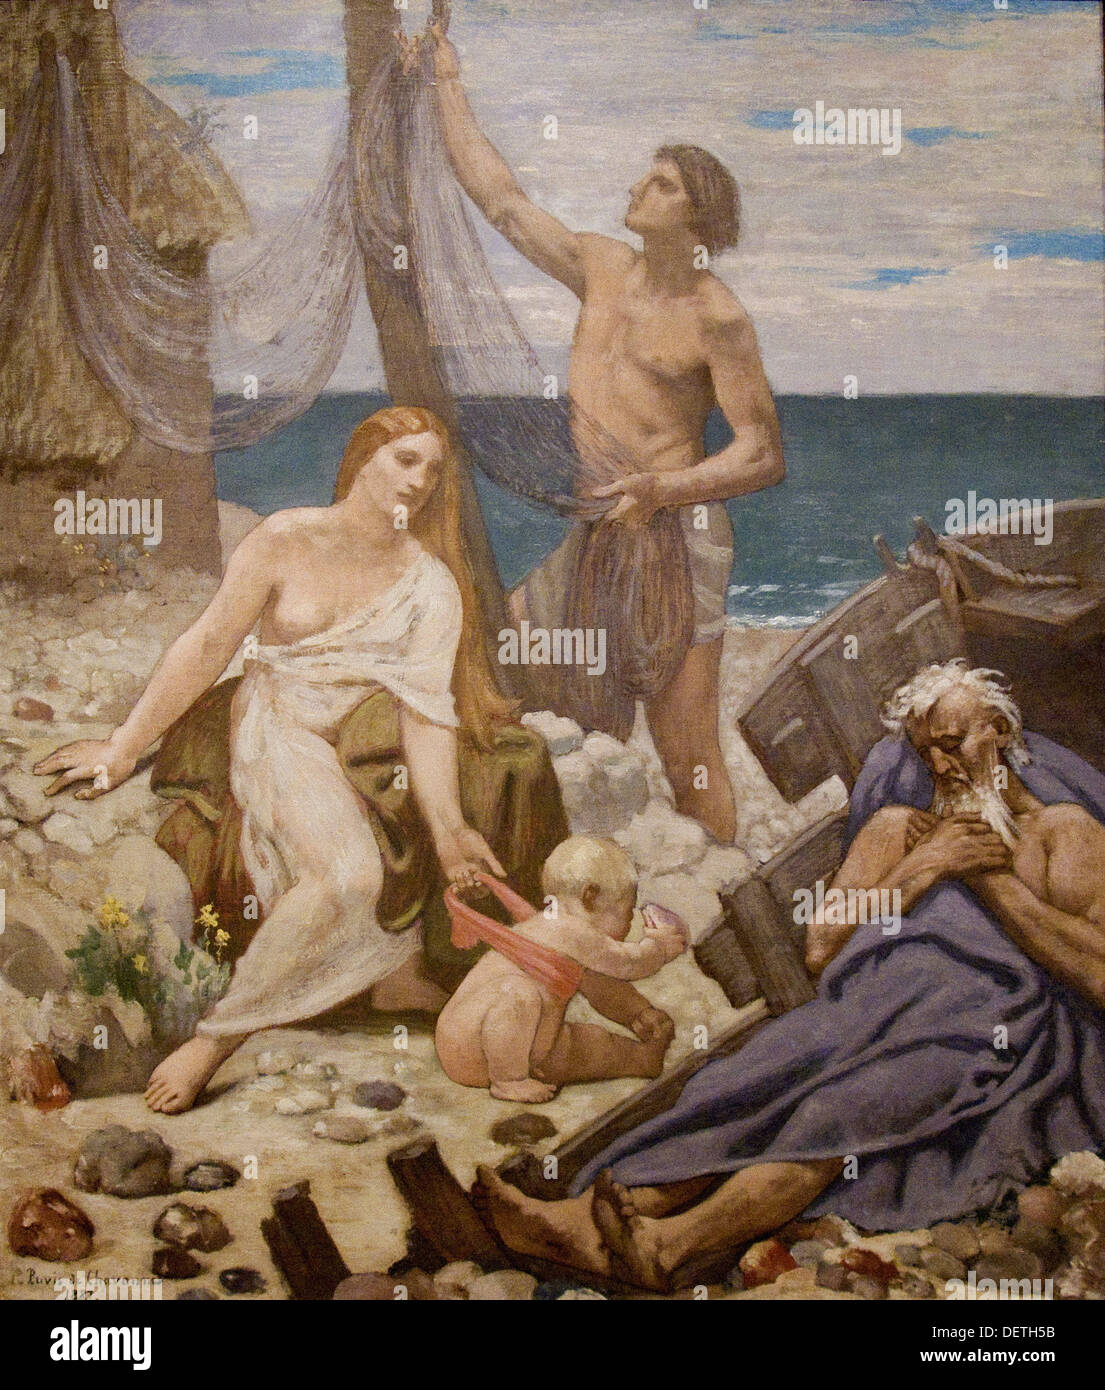 Pierre Cécile Puvis de Chavannes - La famille du pêcheur - 1887 - L'Art Institute de Chicago Banque D'Images